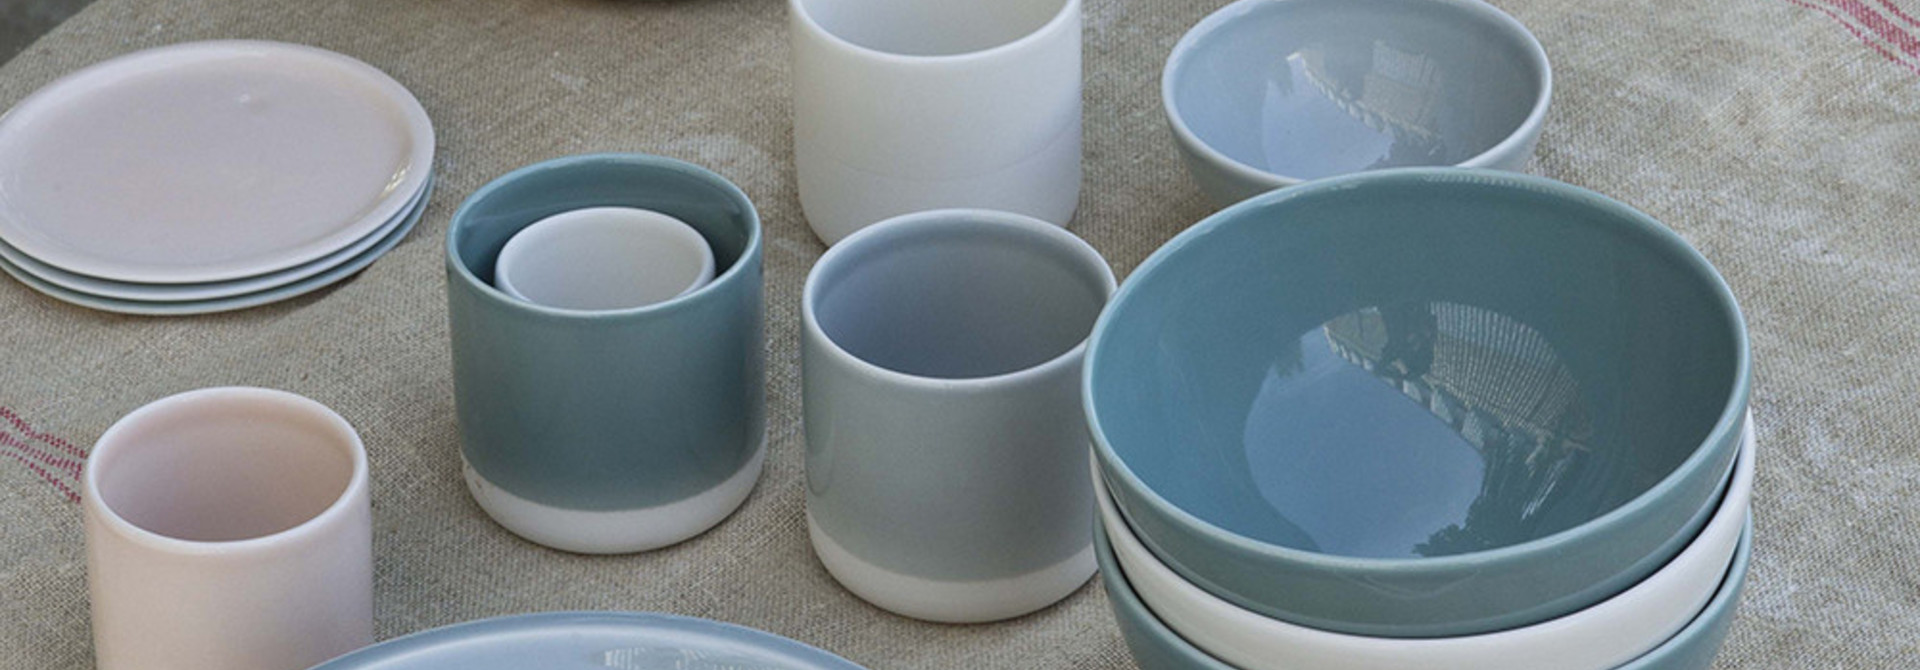 Plates - Jars Ceramistes